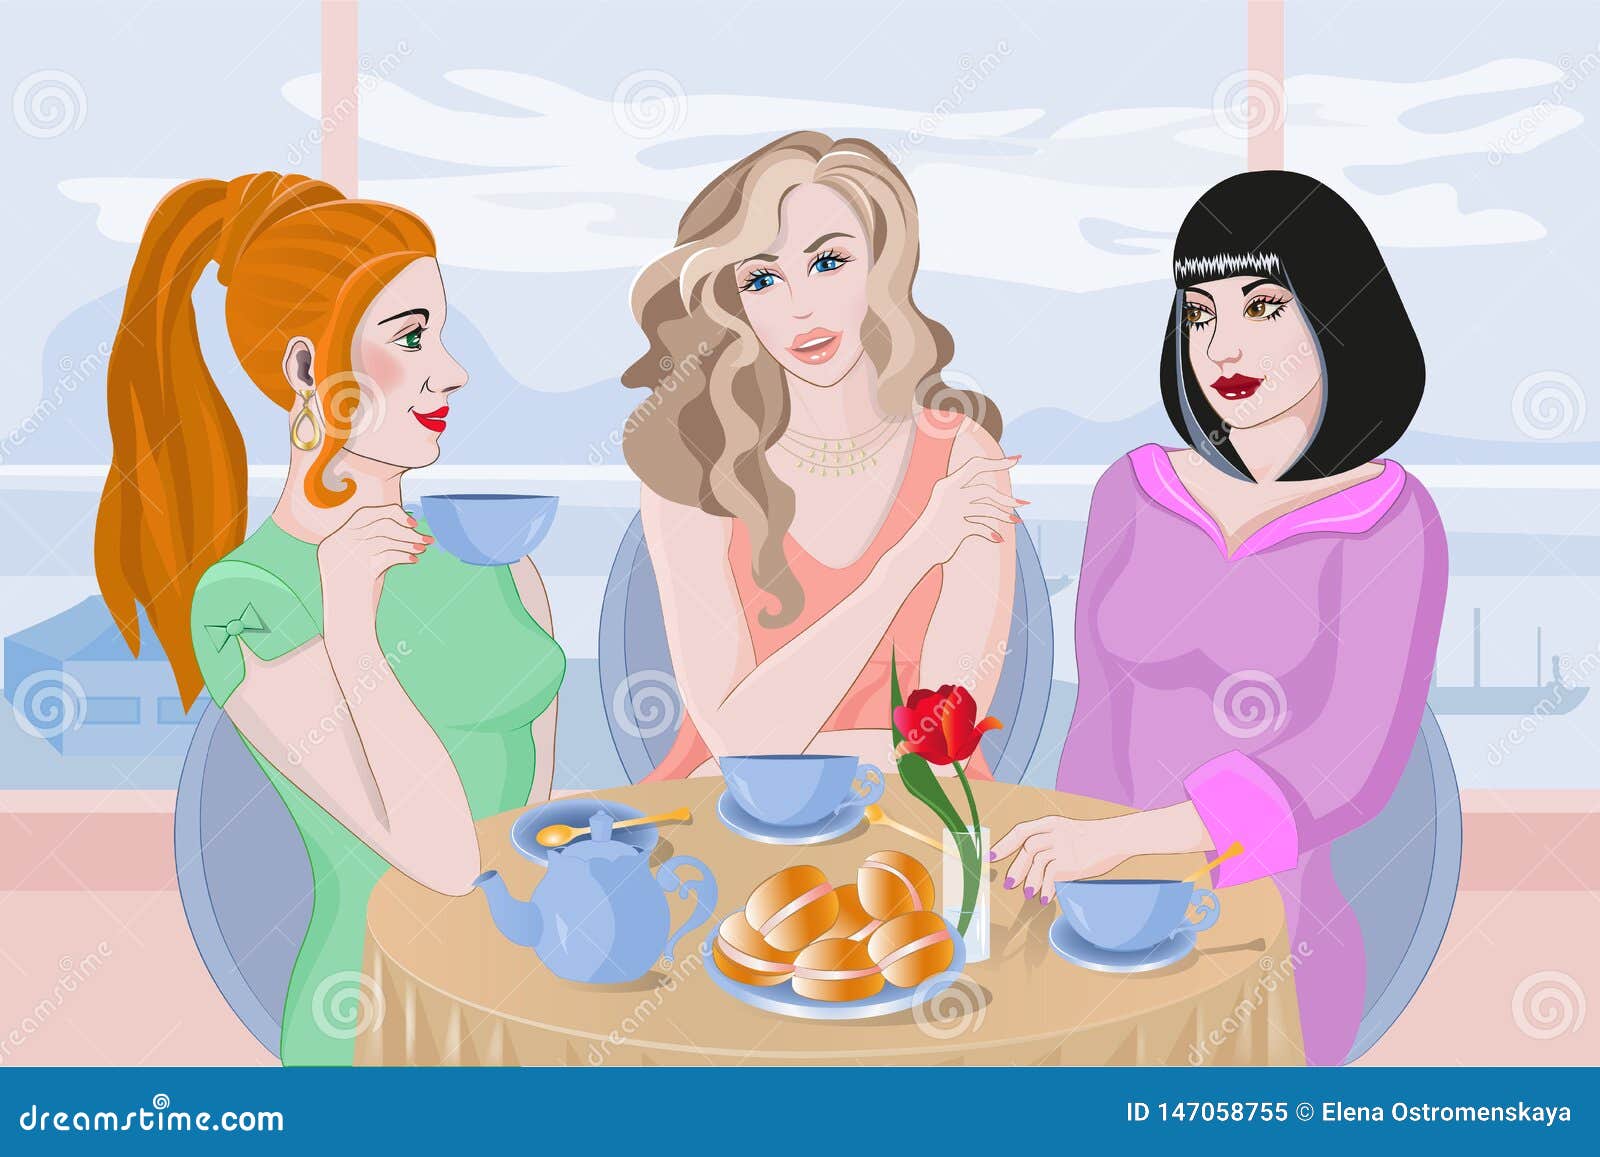 Мама сестра и ее подруги. Чаепитие с подружками. Три девушки за столом. Три подружки в кафе. Иллюстрации подружки в кафе.